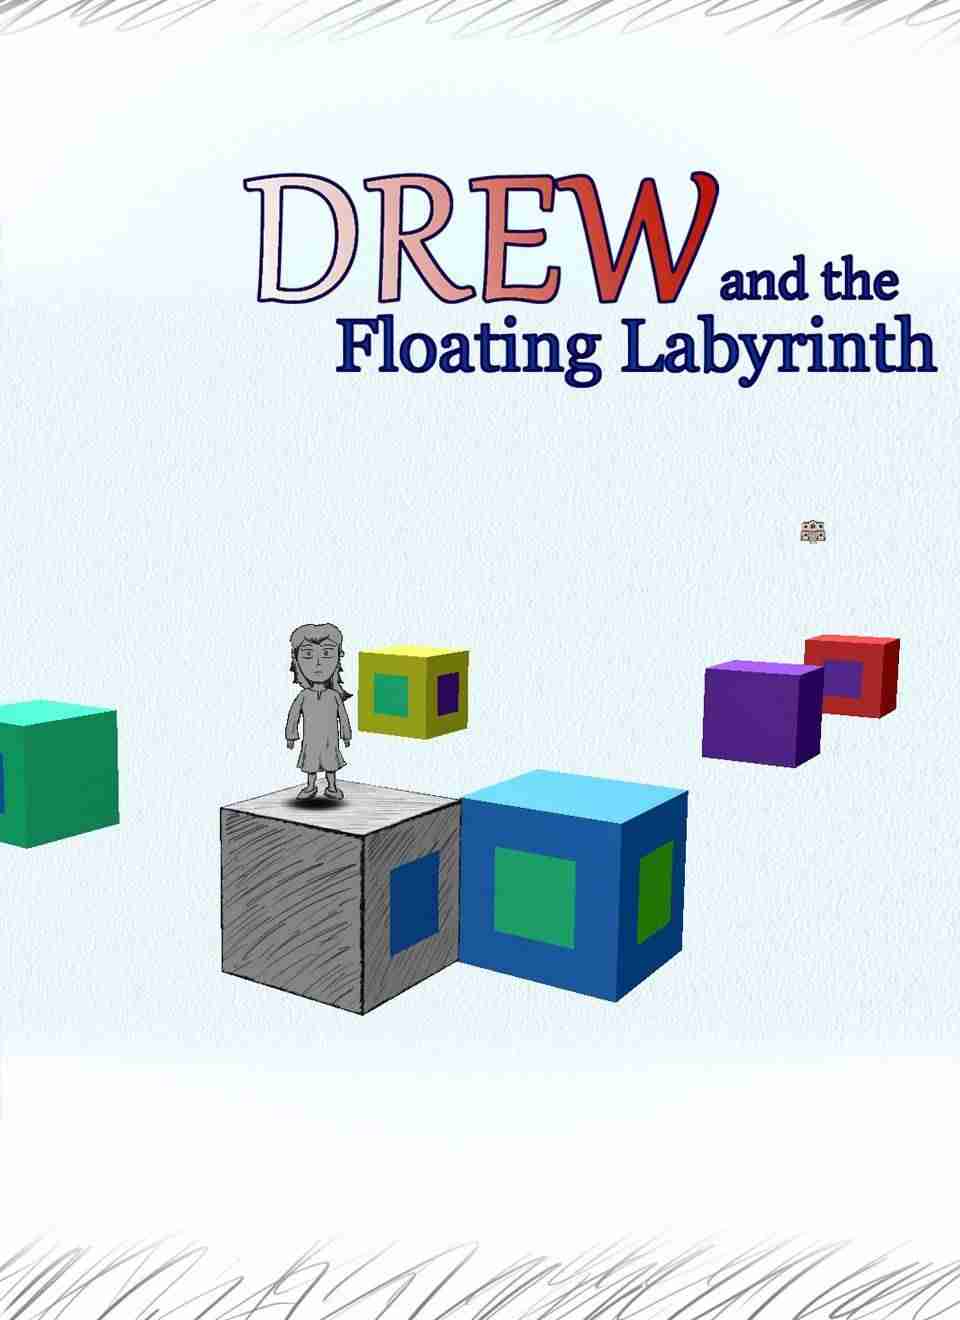 Descargar Drew and The Floating Labyrinth [ENG][PROPHET] por Torrent